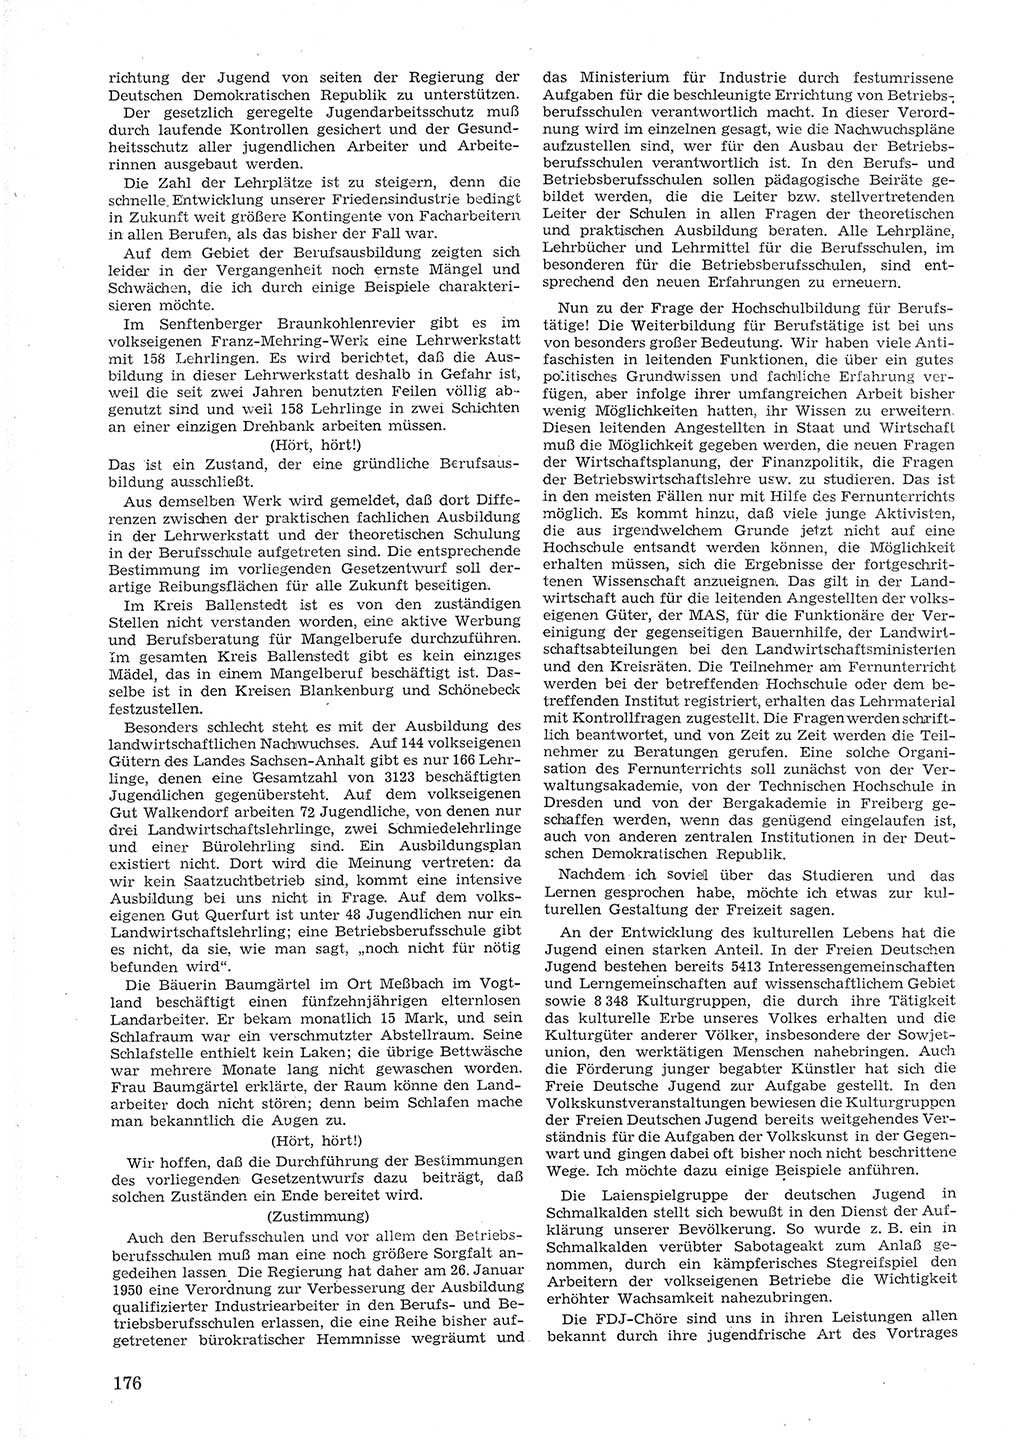 Provisorische Volkskammer (VK) der Deutschen Demokratischen Republik (DDR) 1949-1950, Dokument 188 (Prov. VK DDR 1949-1950, Dok. 188)